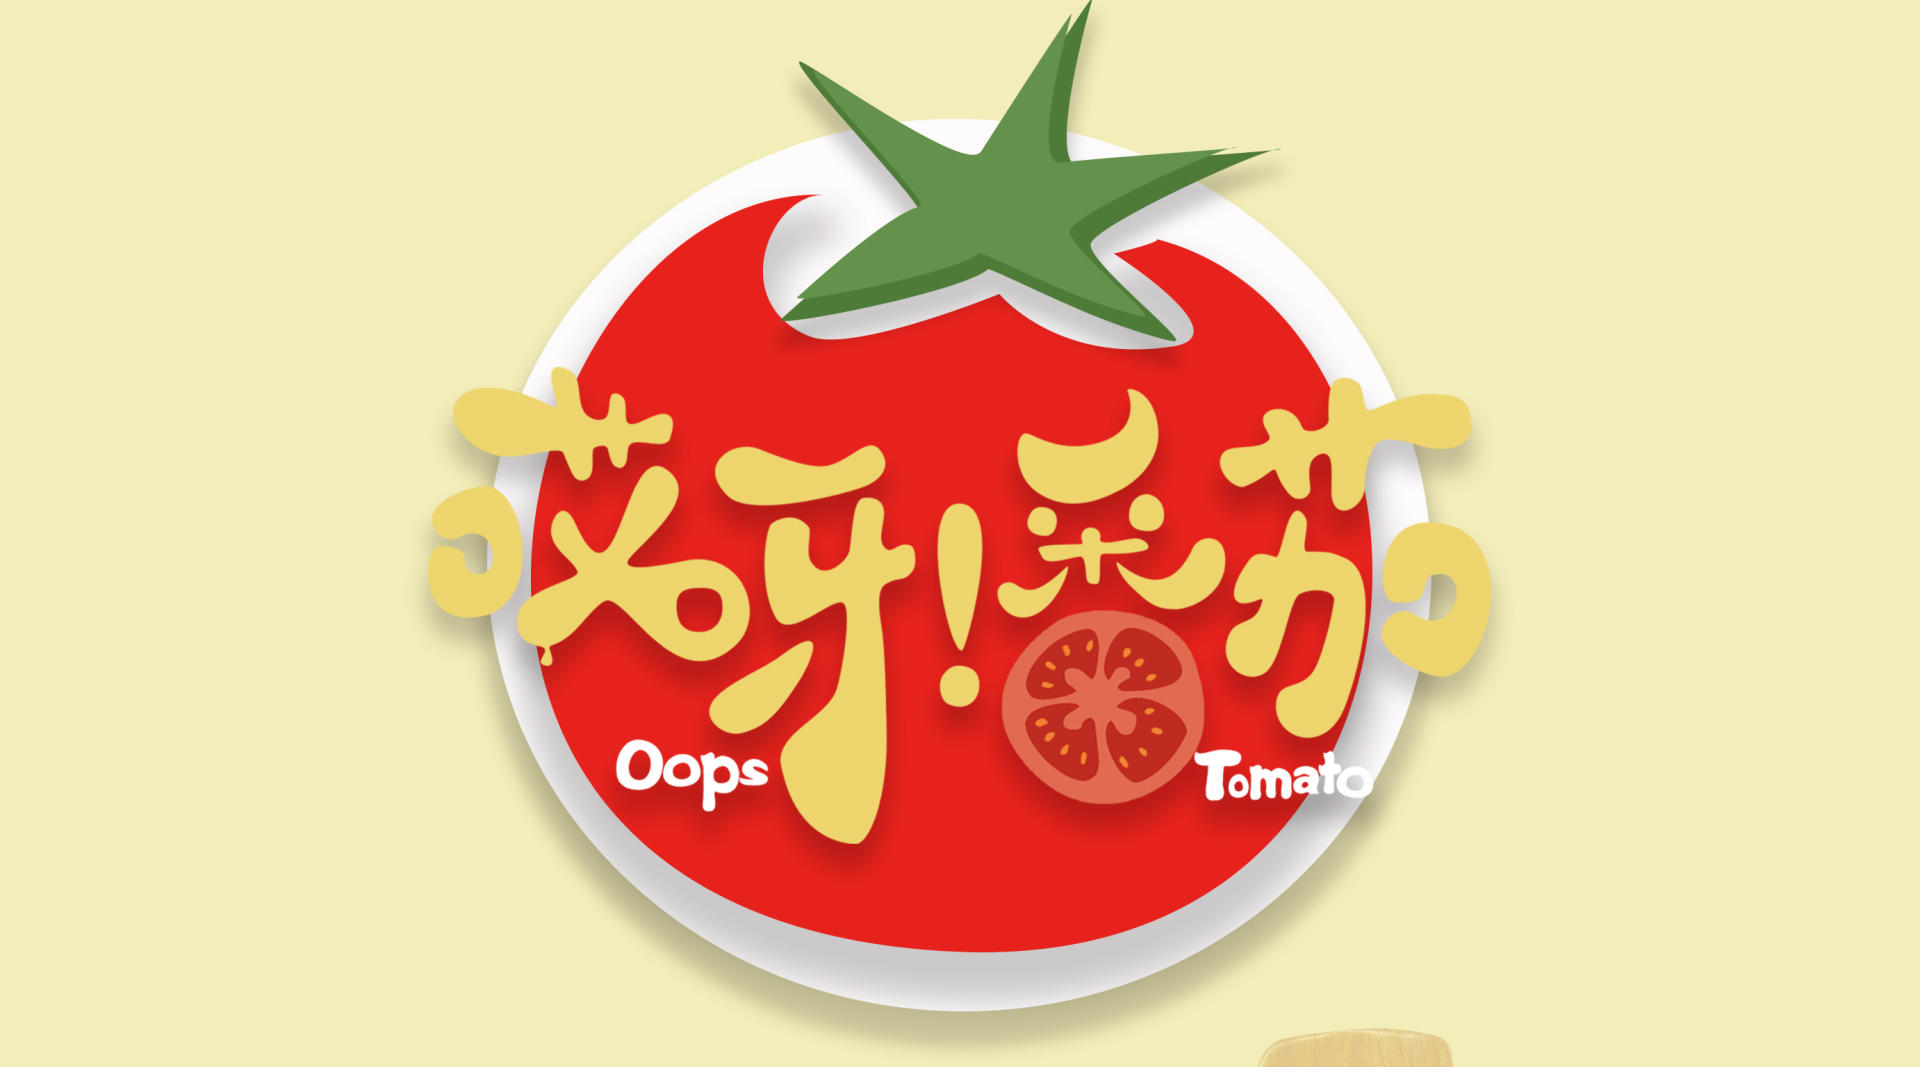 《哎呀！番茄》创意定格动画 广州美术学院2016届优秀毕业创作